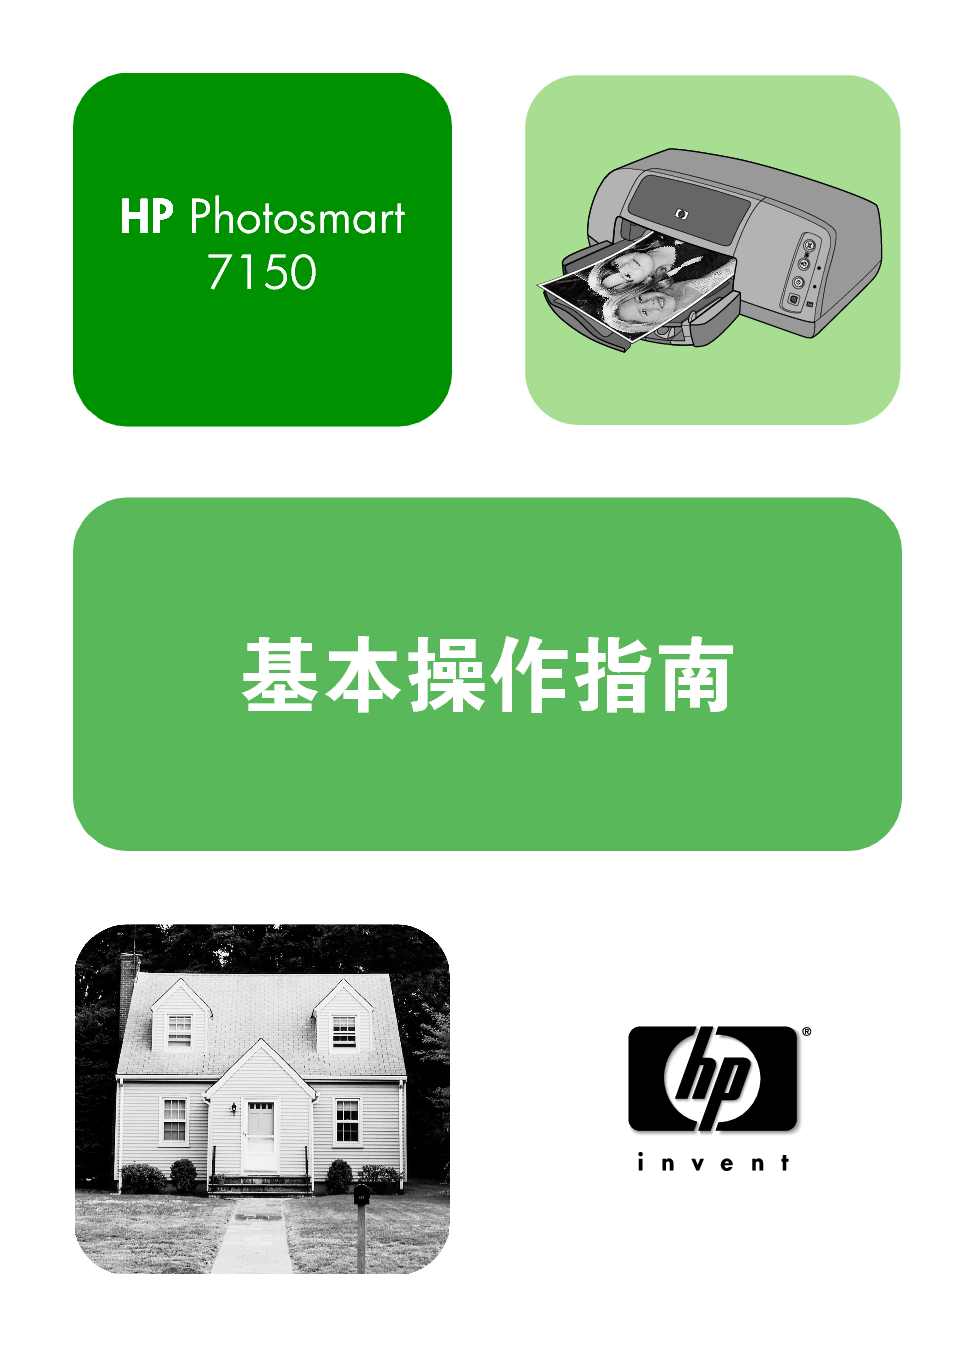 惠普 HP Photosmart 7150 基础使用指南 封面